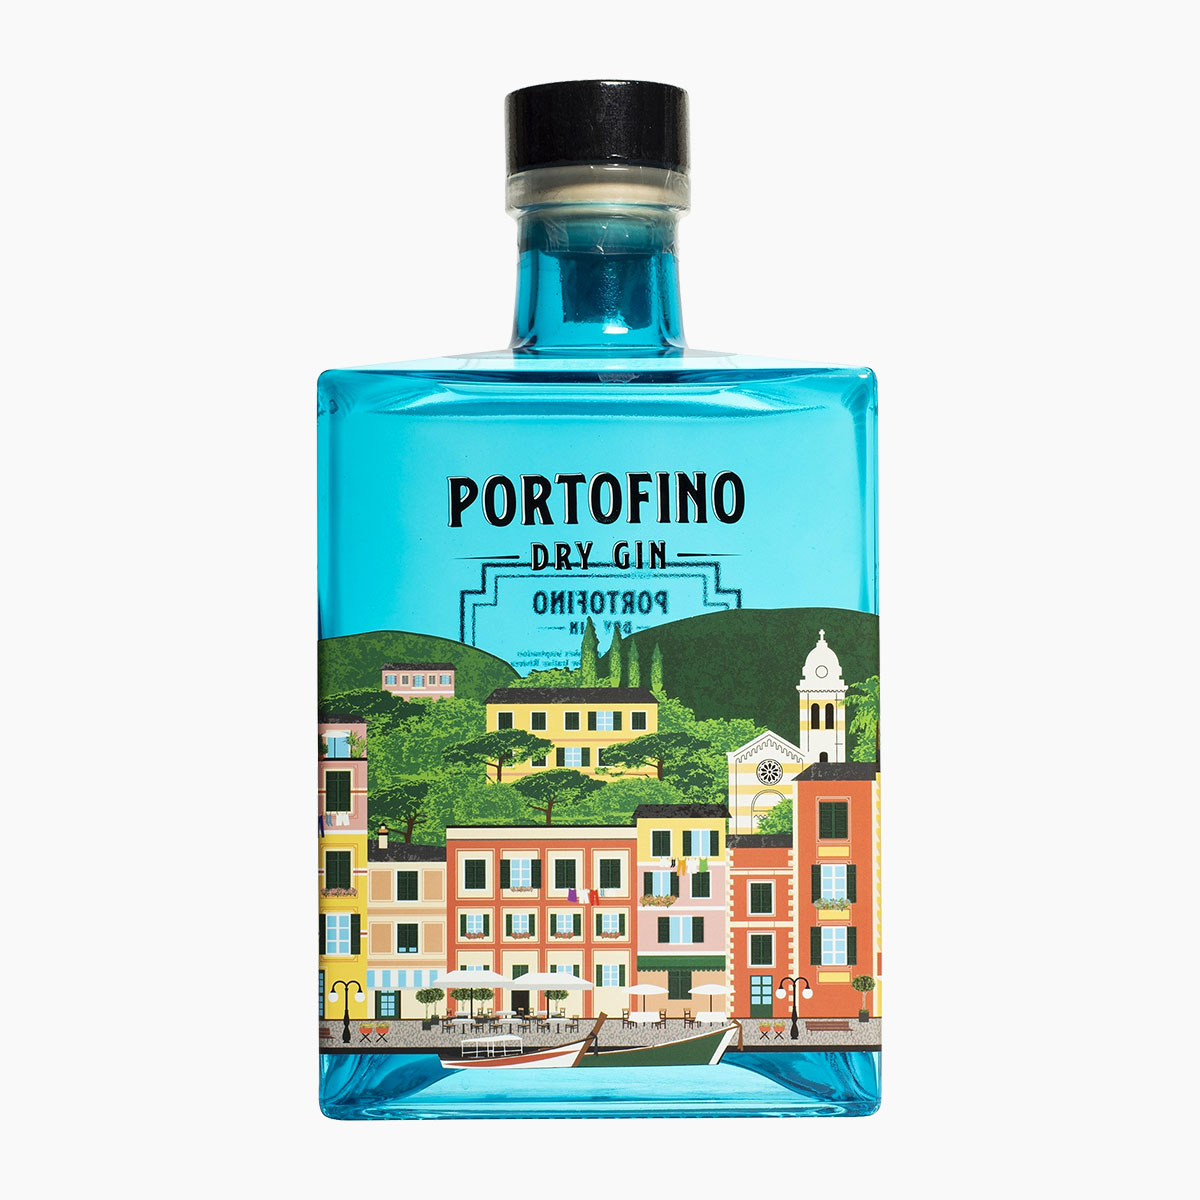 Brug Portofino Gin til en forbedret oplevelse